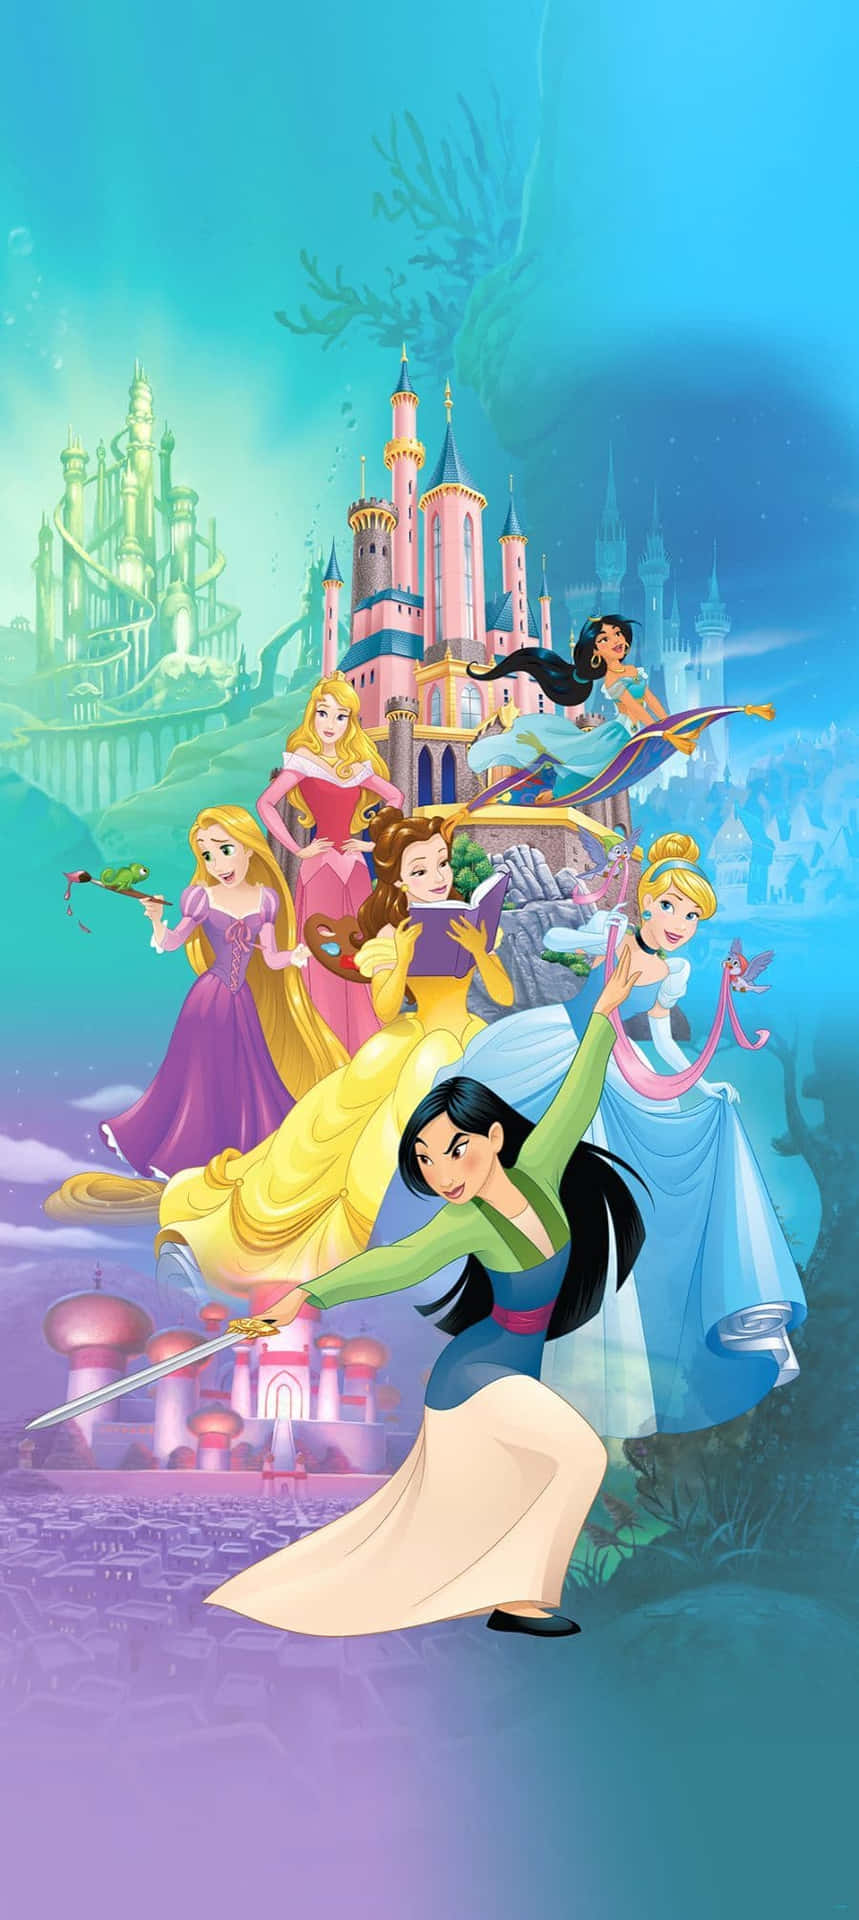 Erkundedie Fantastischen Welten Eurer Hoheit – Disney Princess Erlebnis